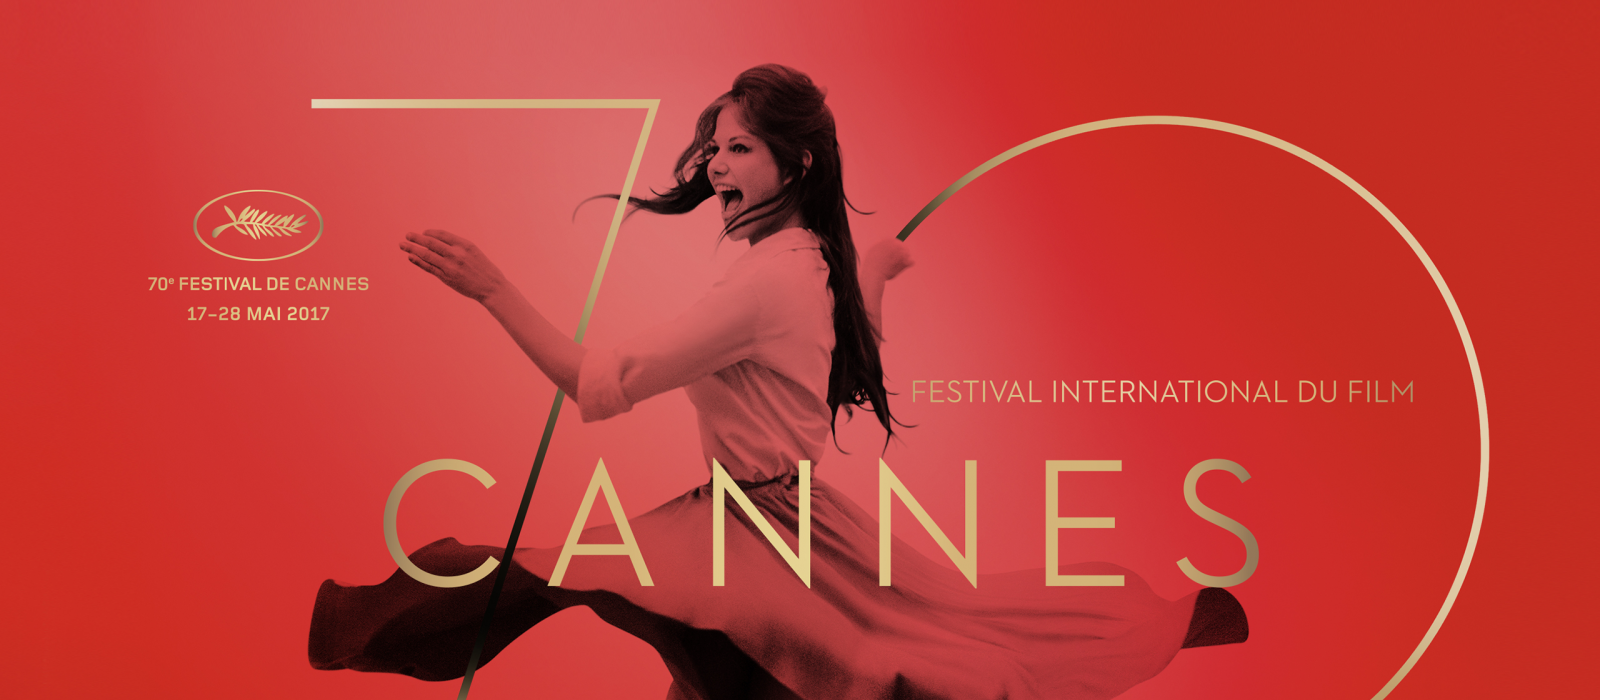 Le Festival de Cannes commence demain !